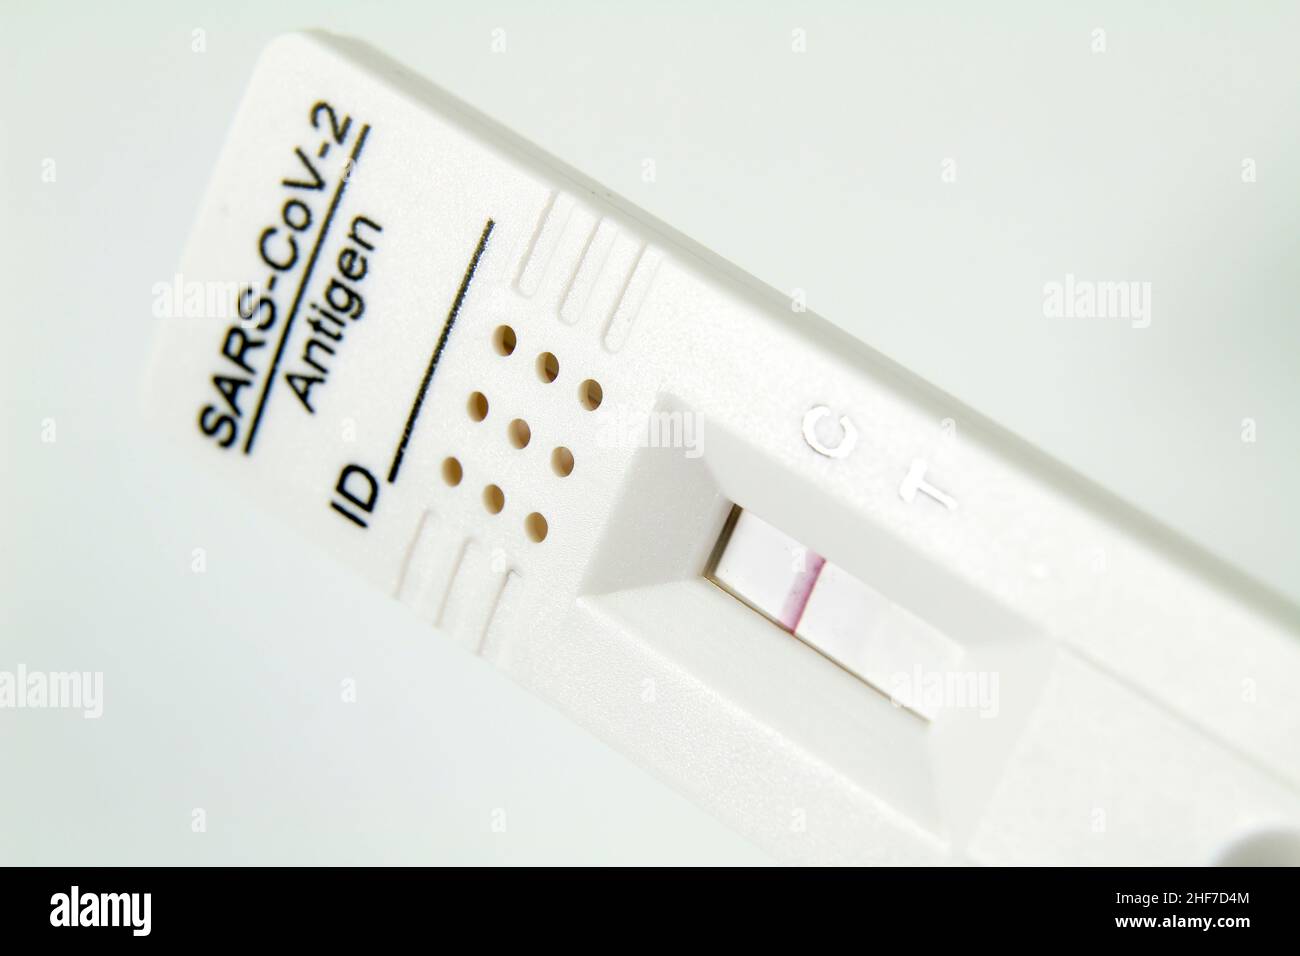 Cassetta per test diagnostico con antigene rapido di Coronavirus SARS-COV-2 Covid-19 su sfondo bianco Foto Stock